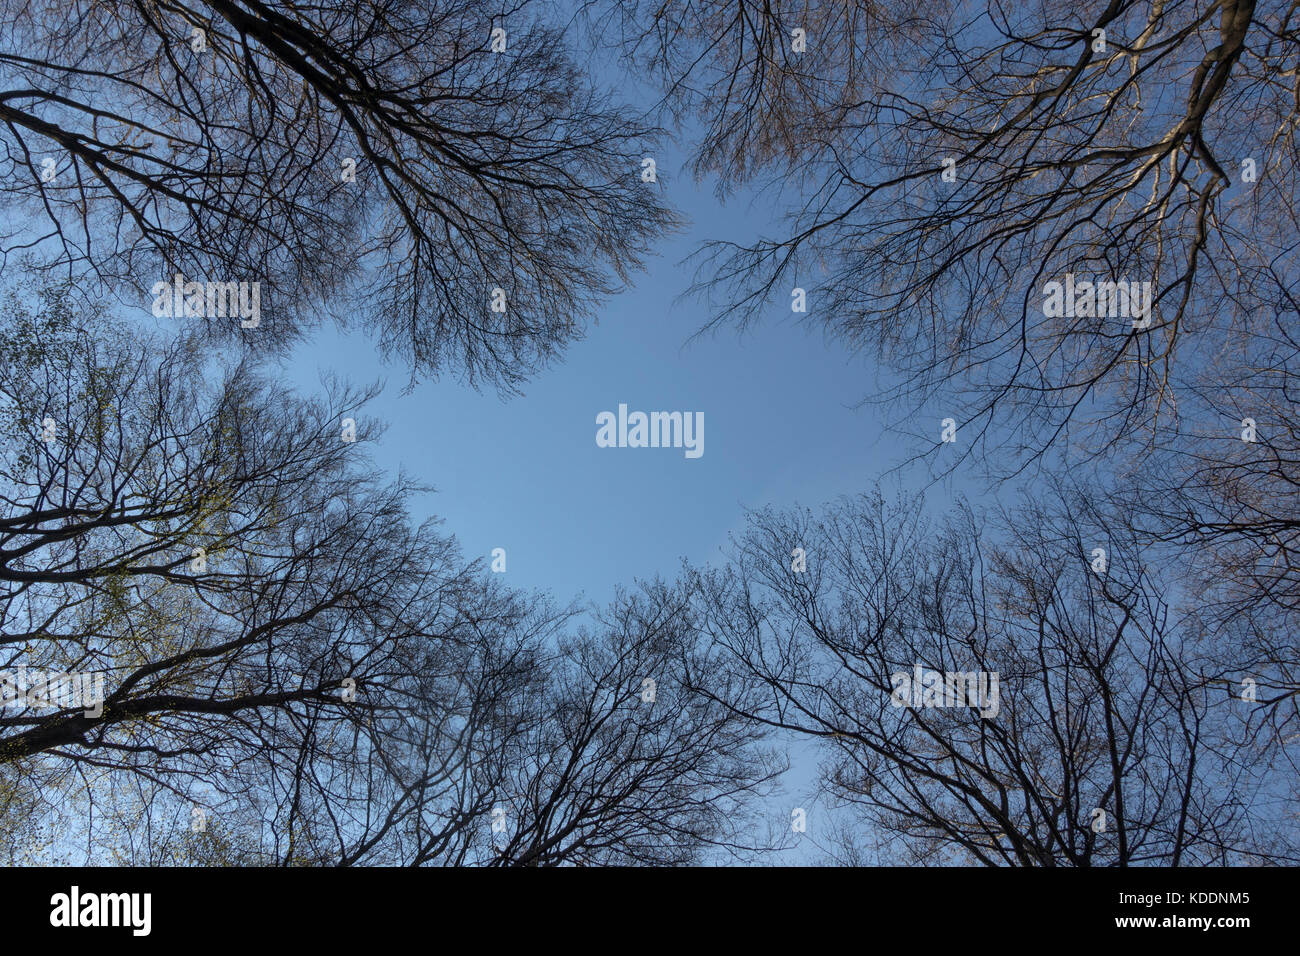 La cime des arbres au printemps, un regard dans le ciel bleu, les hêtres au printemps, l'Allemagne, l'Europe. Banque D'Images